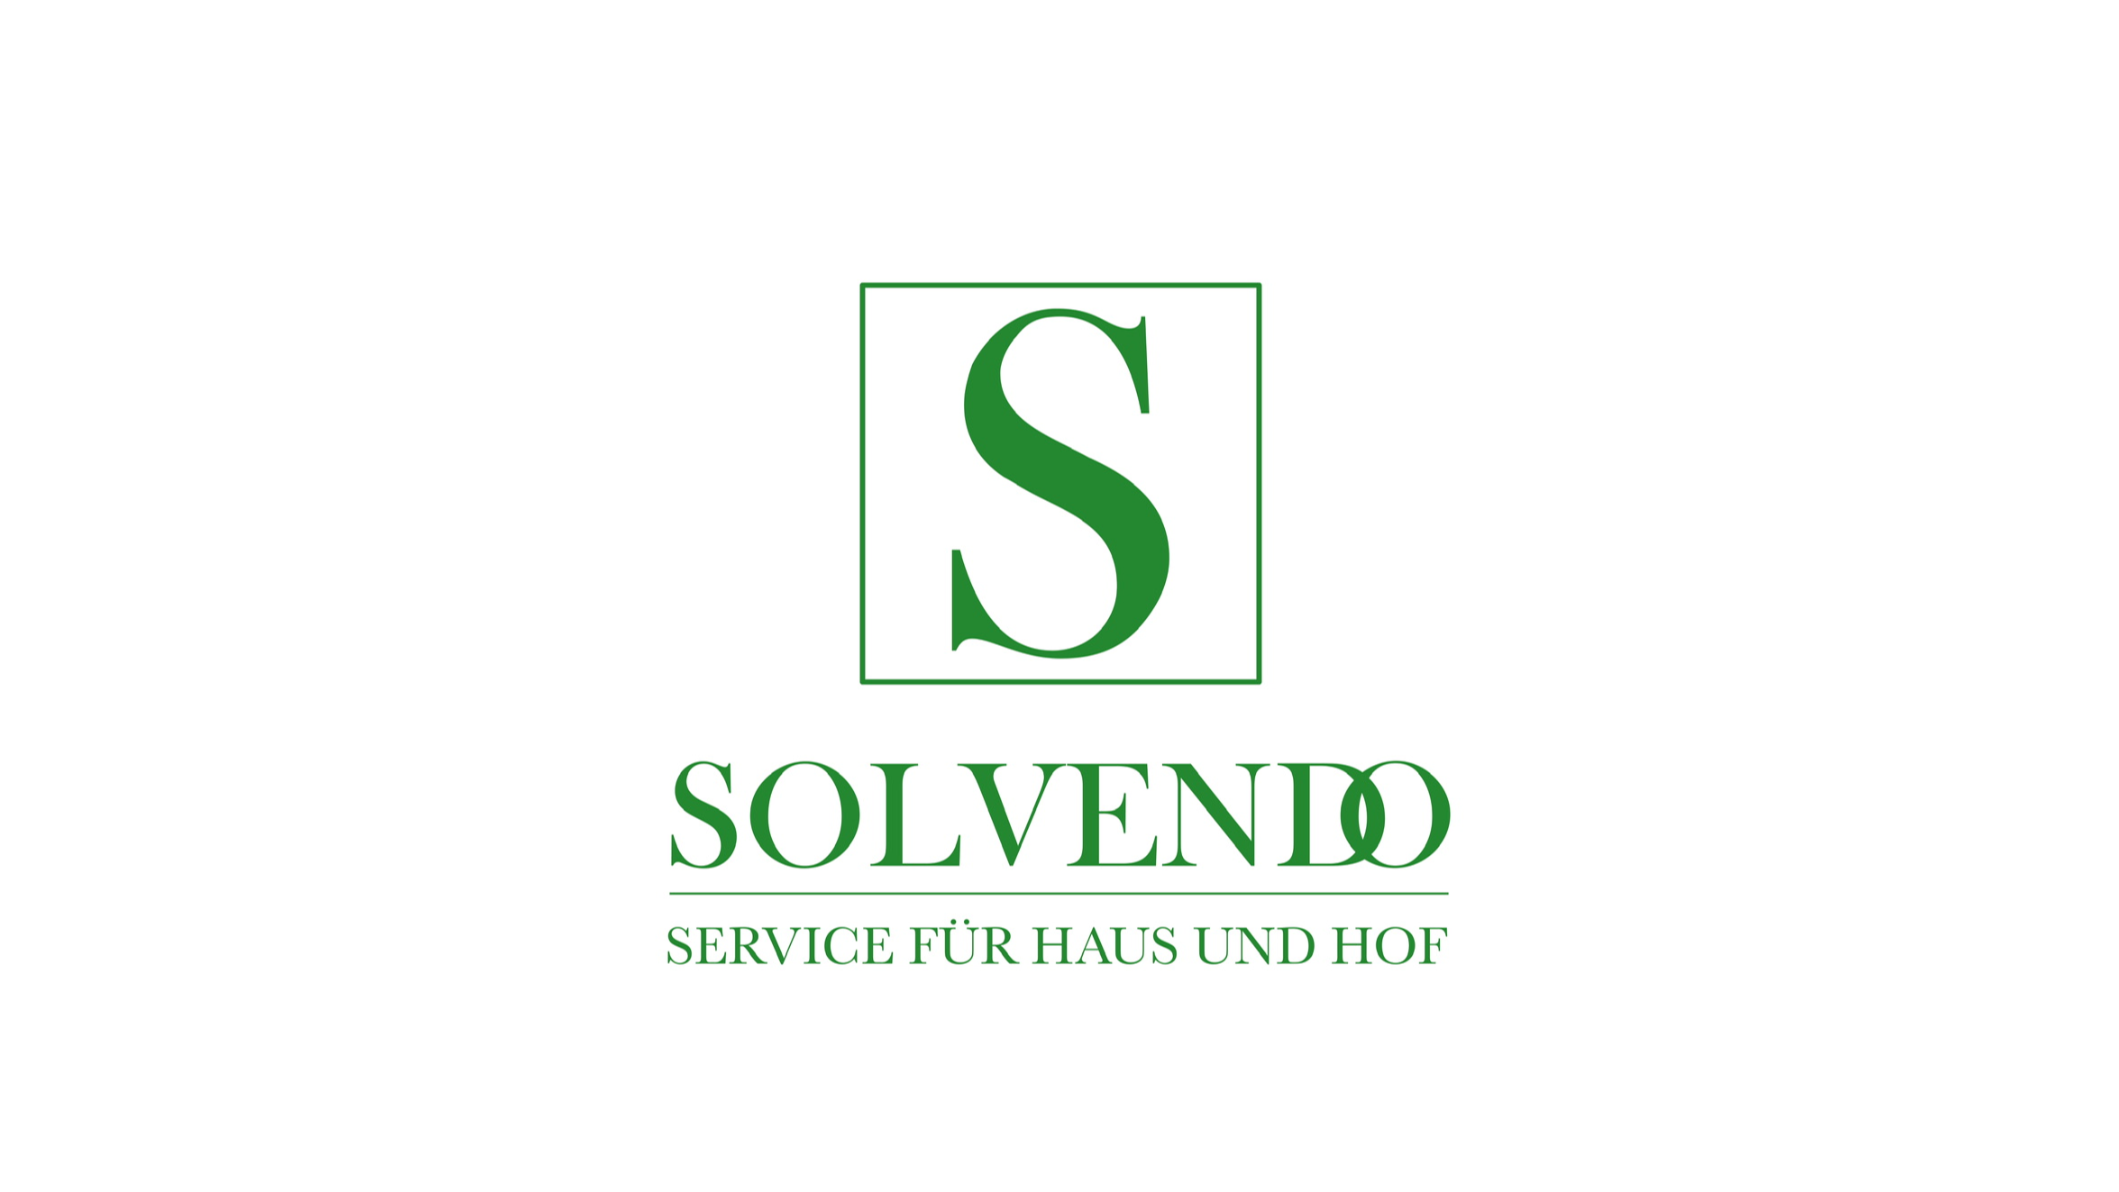 Kundenbild groß 36 Solvendo - Service für Haus und Hof